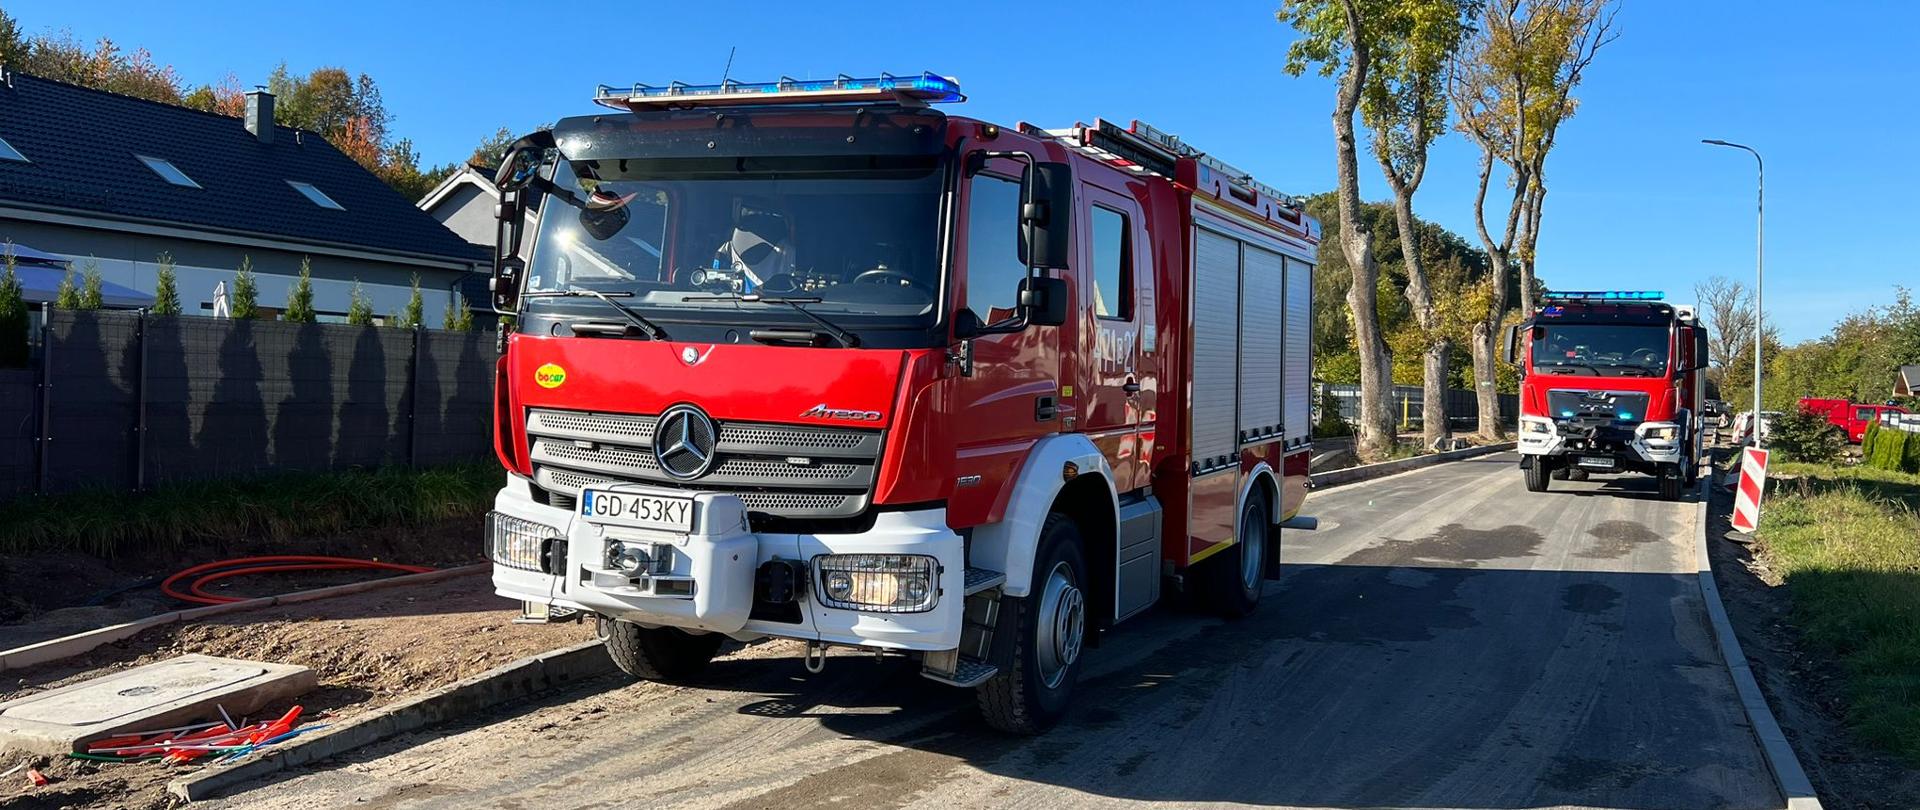 Zdjęcie przedstawia pojazdy pożarnicze ustawione na jezdni zabezpieczające miejsce zdarzenia.